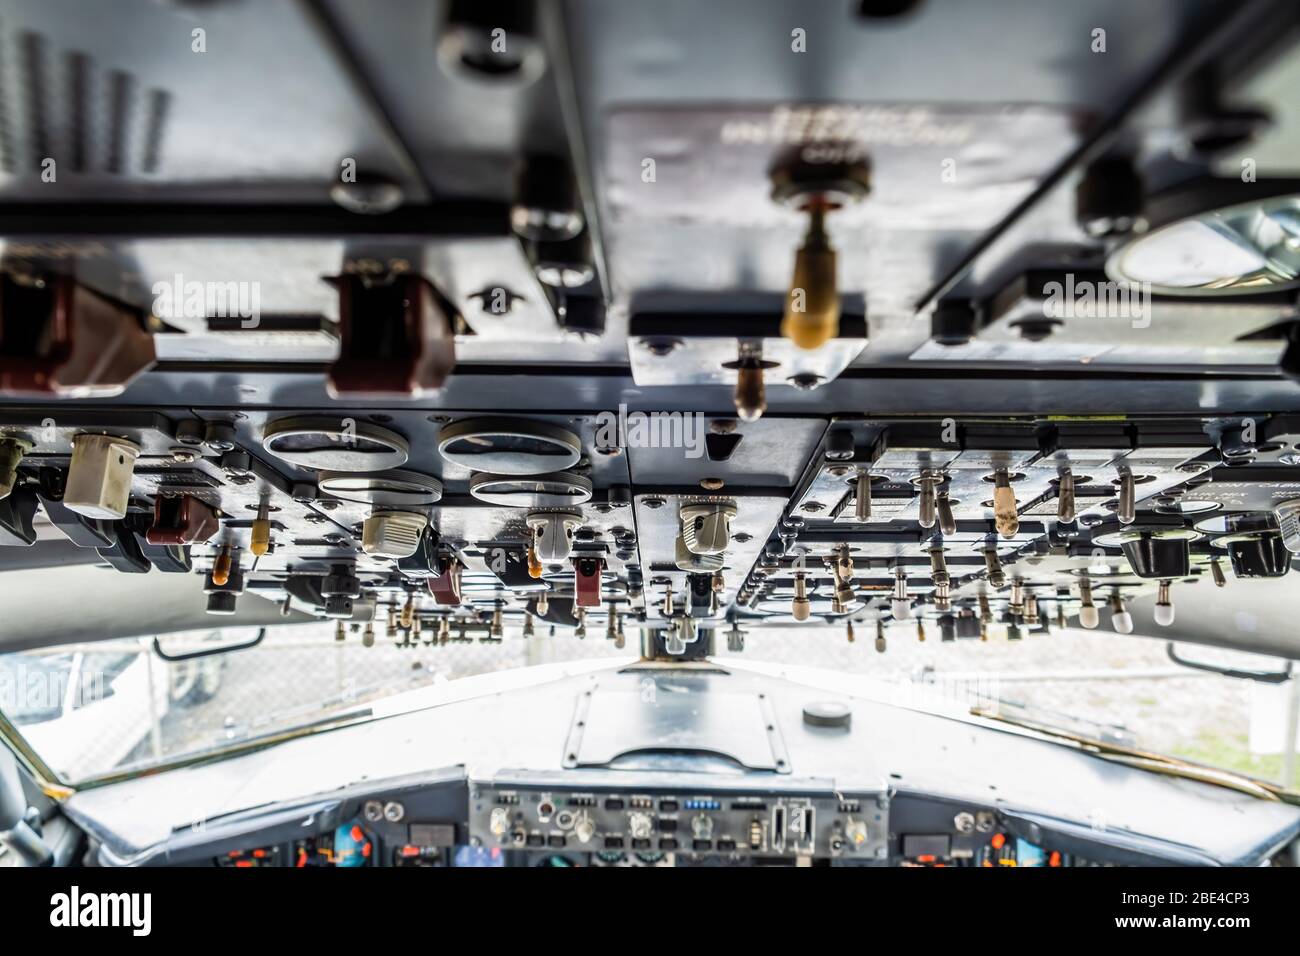 Viele Schalter auf Flugzeug Cockpit Decke in flachen Fokus Stockfotografie  - Alamy